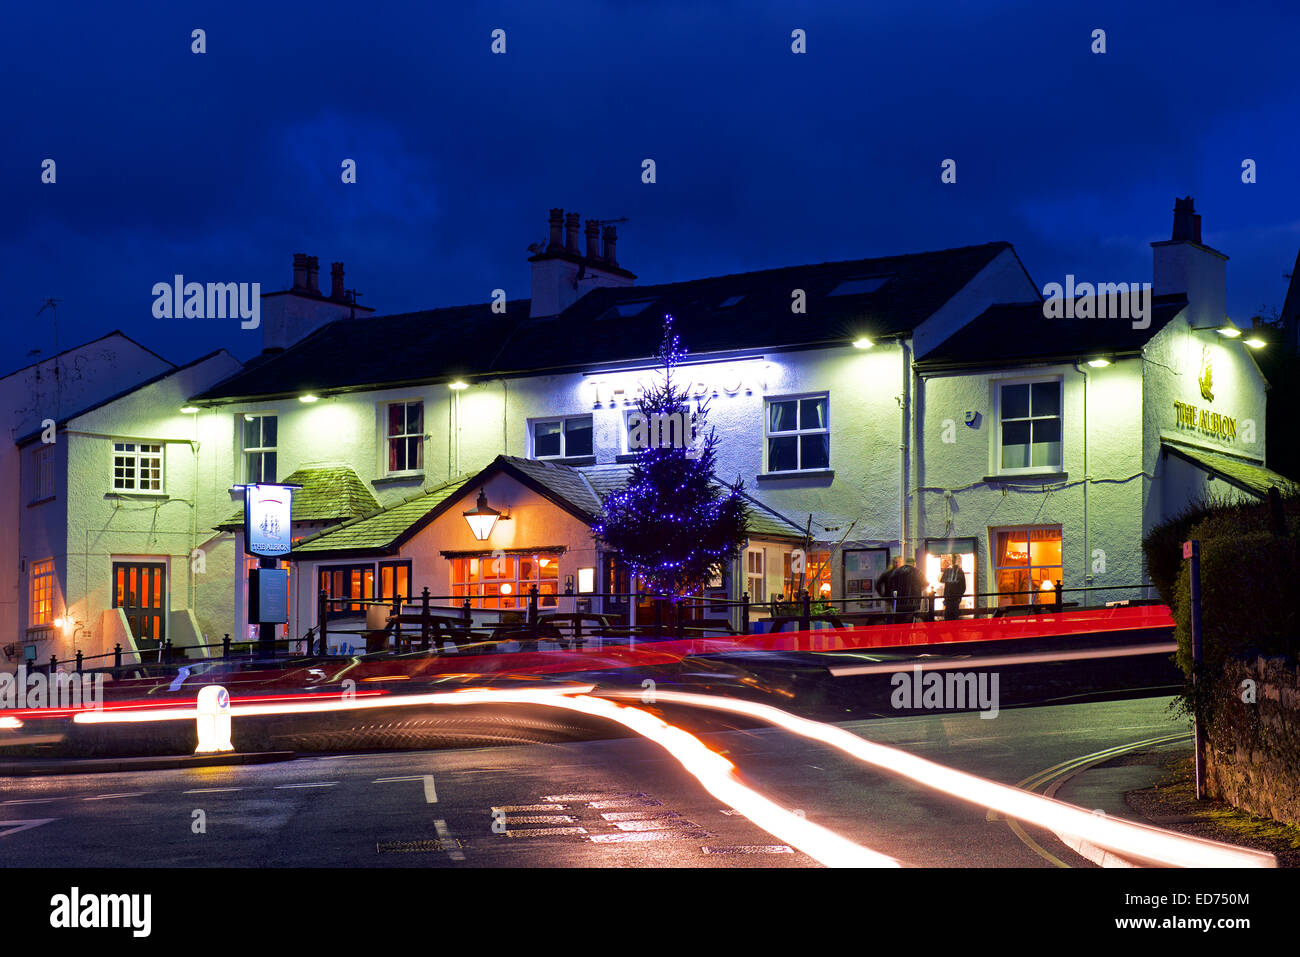 The Albion pub at dusk, Arnside, Cumbria, England UK Stock Photo